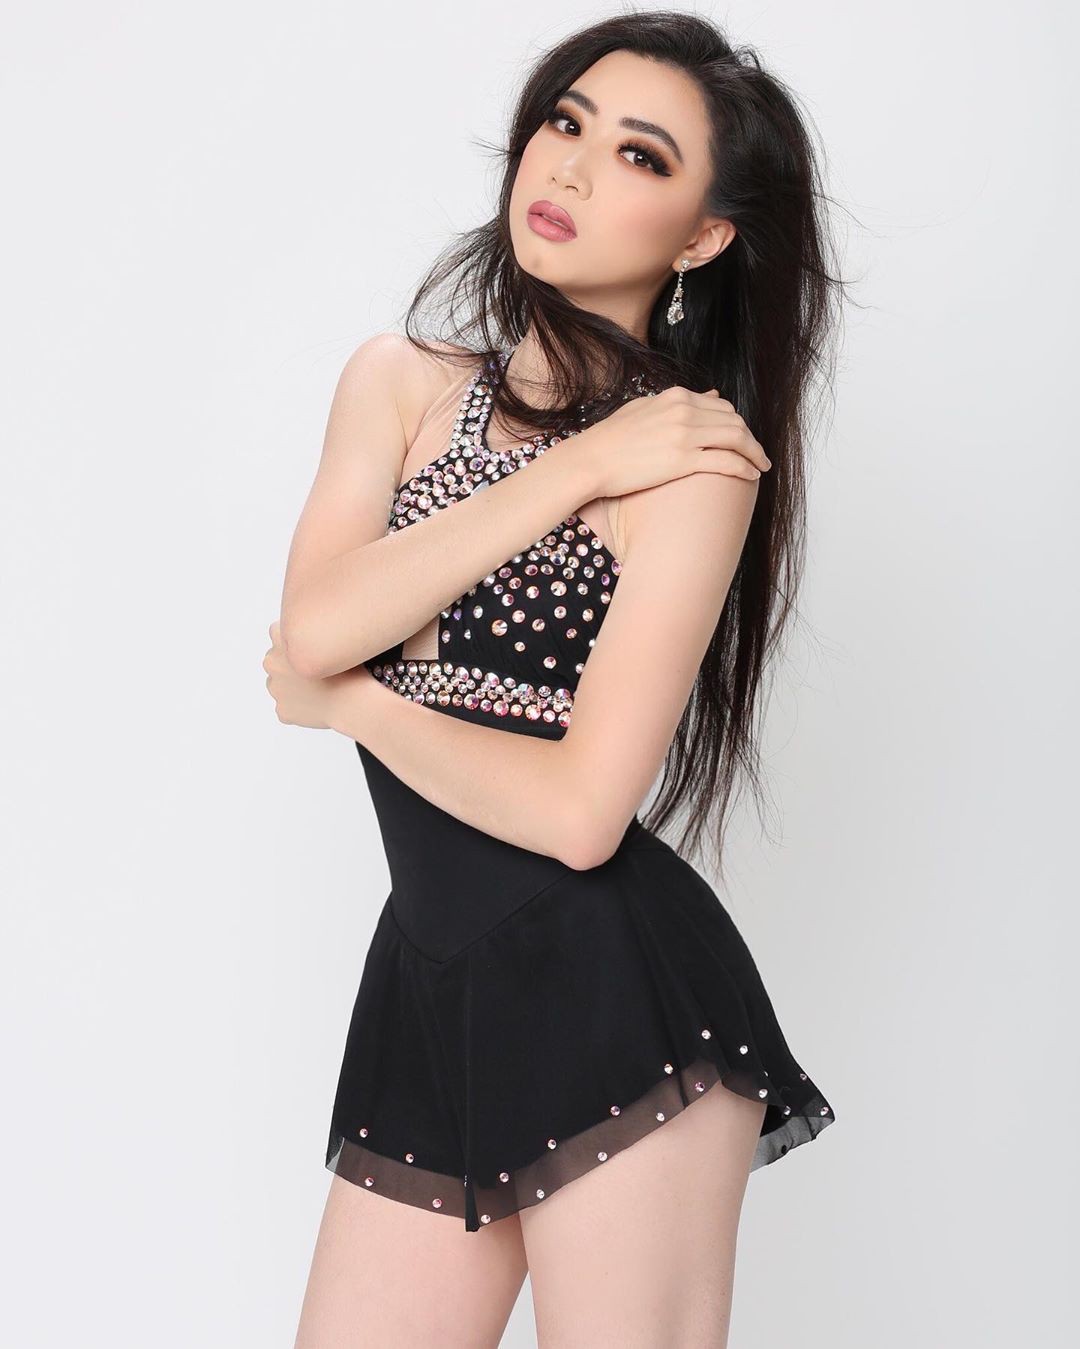 Elizabeth Nguyen photoshoot ideas, hot thighs, Sexy Models: fashion model,  Hot Model,  Hot Dresses  